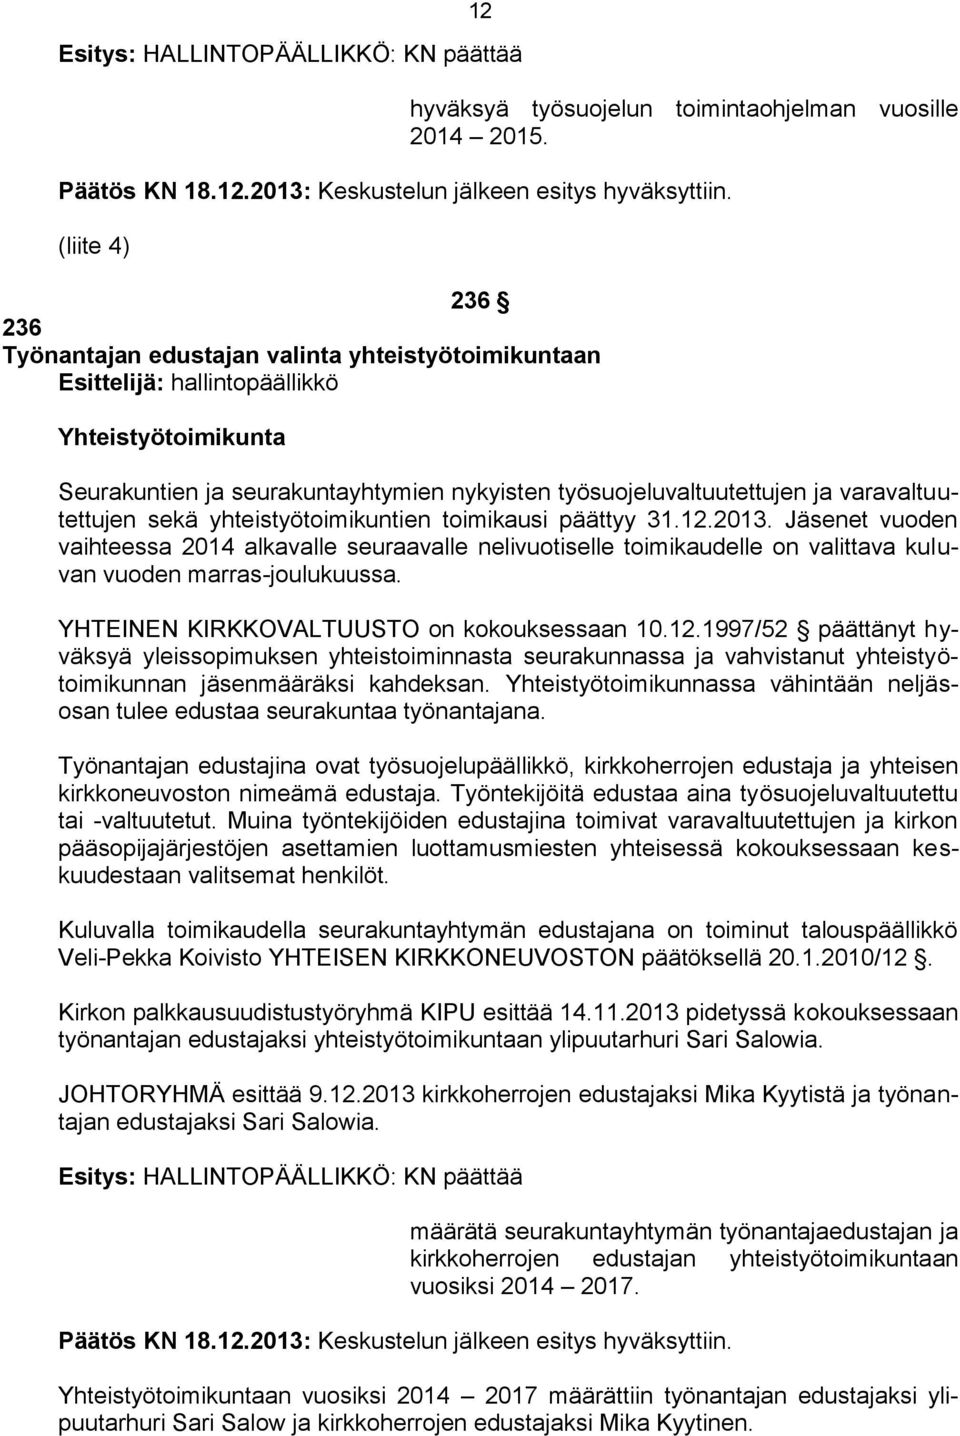 varavaltuutettujen sekä yhteistyötoimikuntien toimikausi päättyy 31.12.2013.